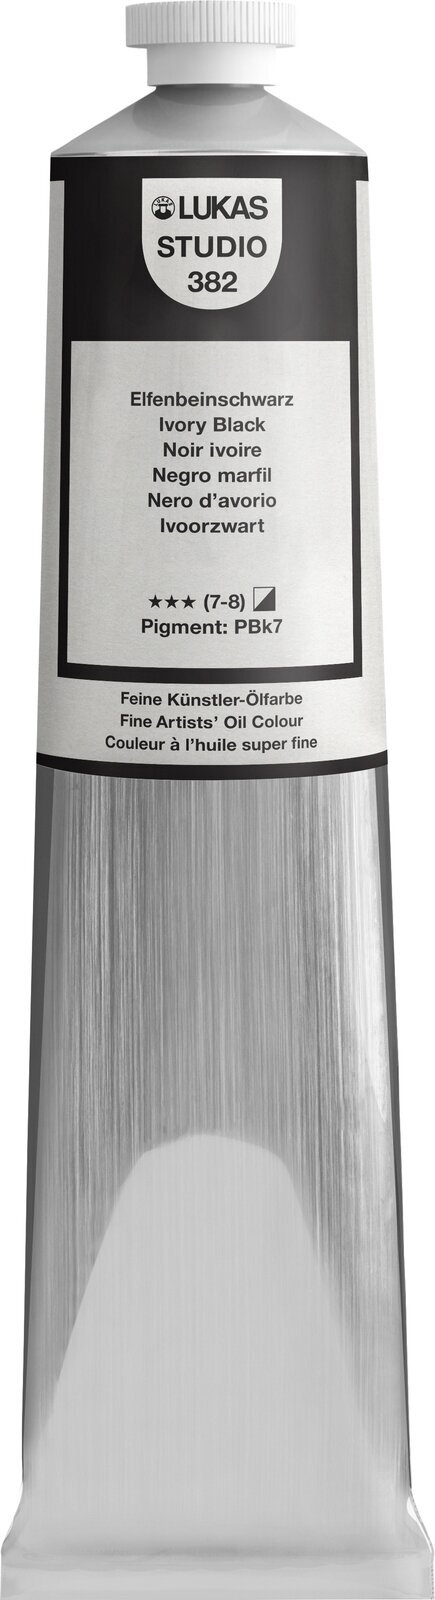 Ölfarbe Lukas Studio Oil Paint Aluminium Tube Ölgemälde Ivory Black 200 ml 1 Stck